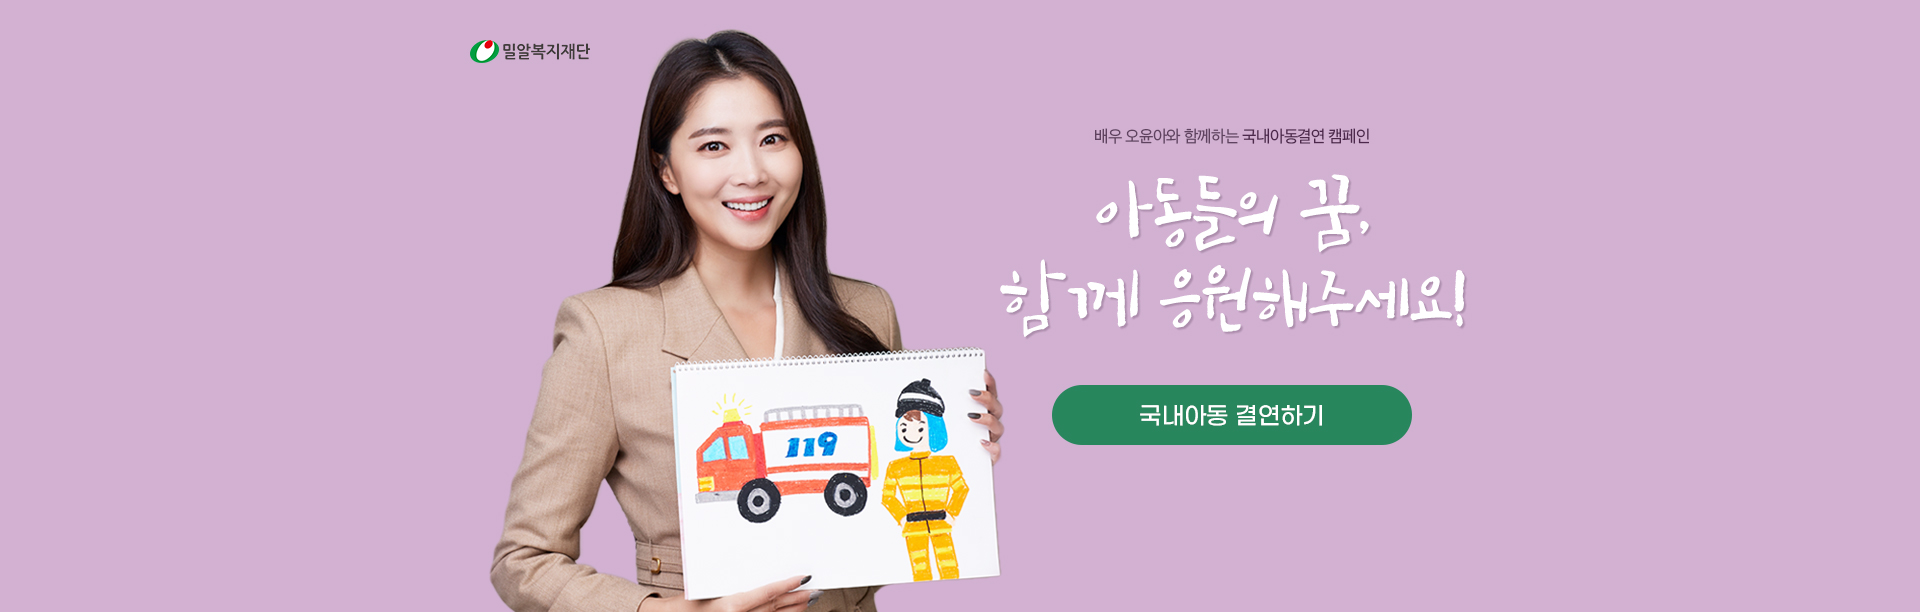 배우 오윤아와 함께하는 국내아동결연 캠페인 아동들의 꿈 함께 응원해주세요.